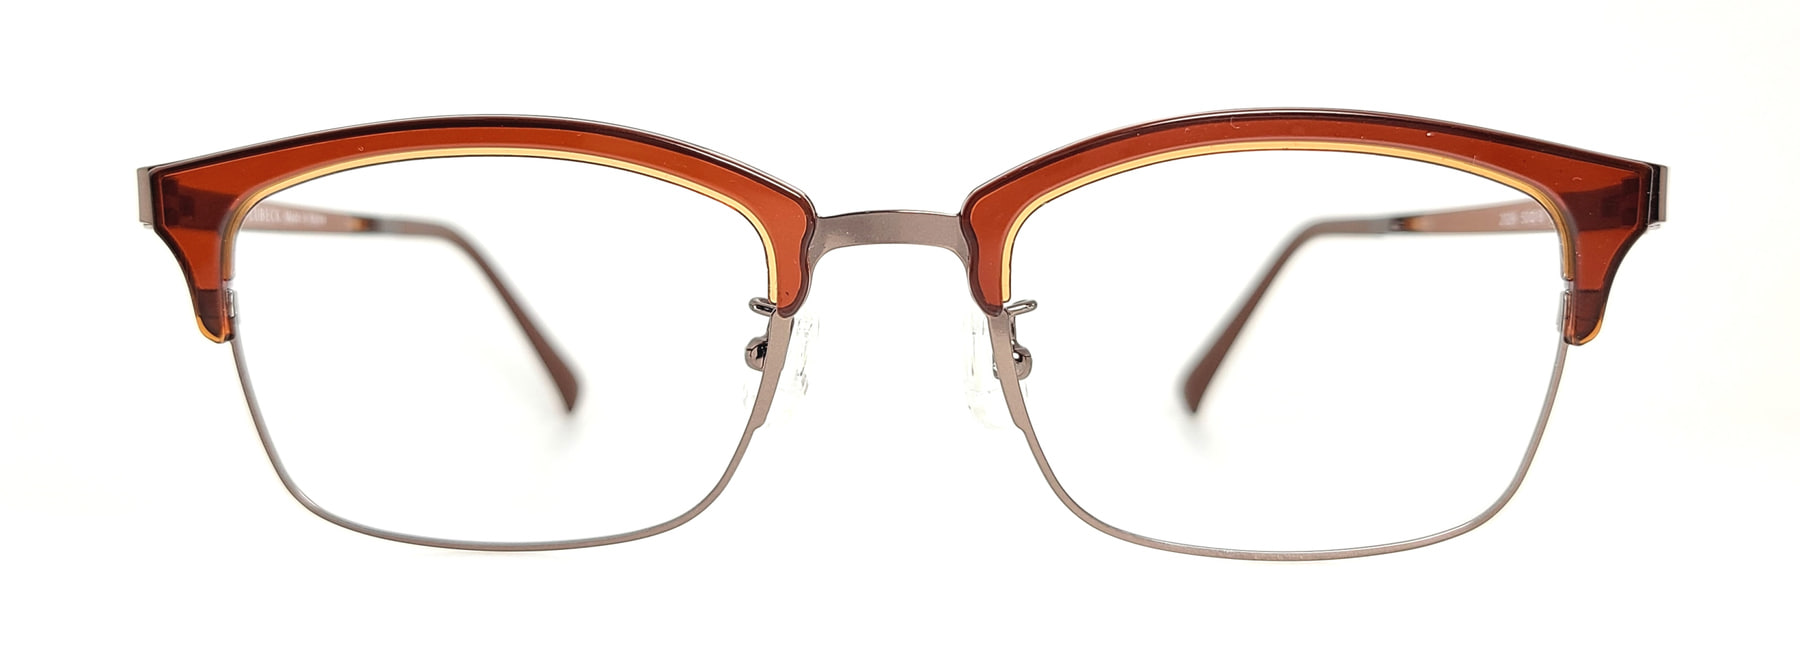 LUBECK 2029, Korean glasses, sunglasses, eyeglasses, glasses